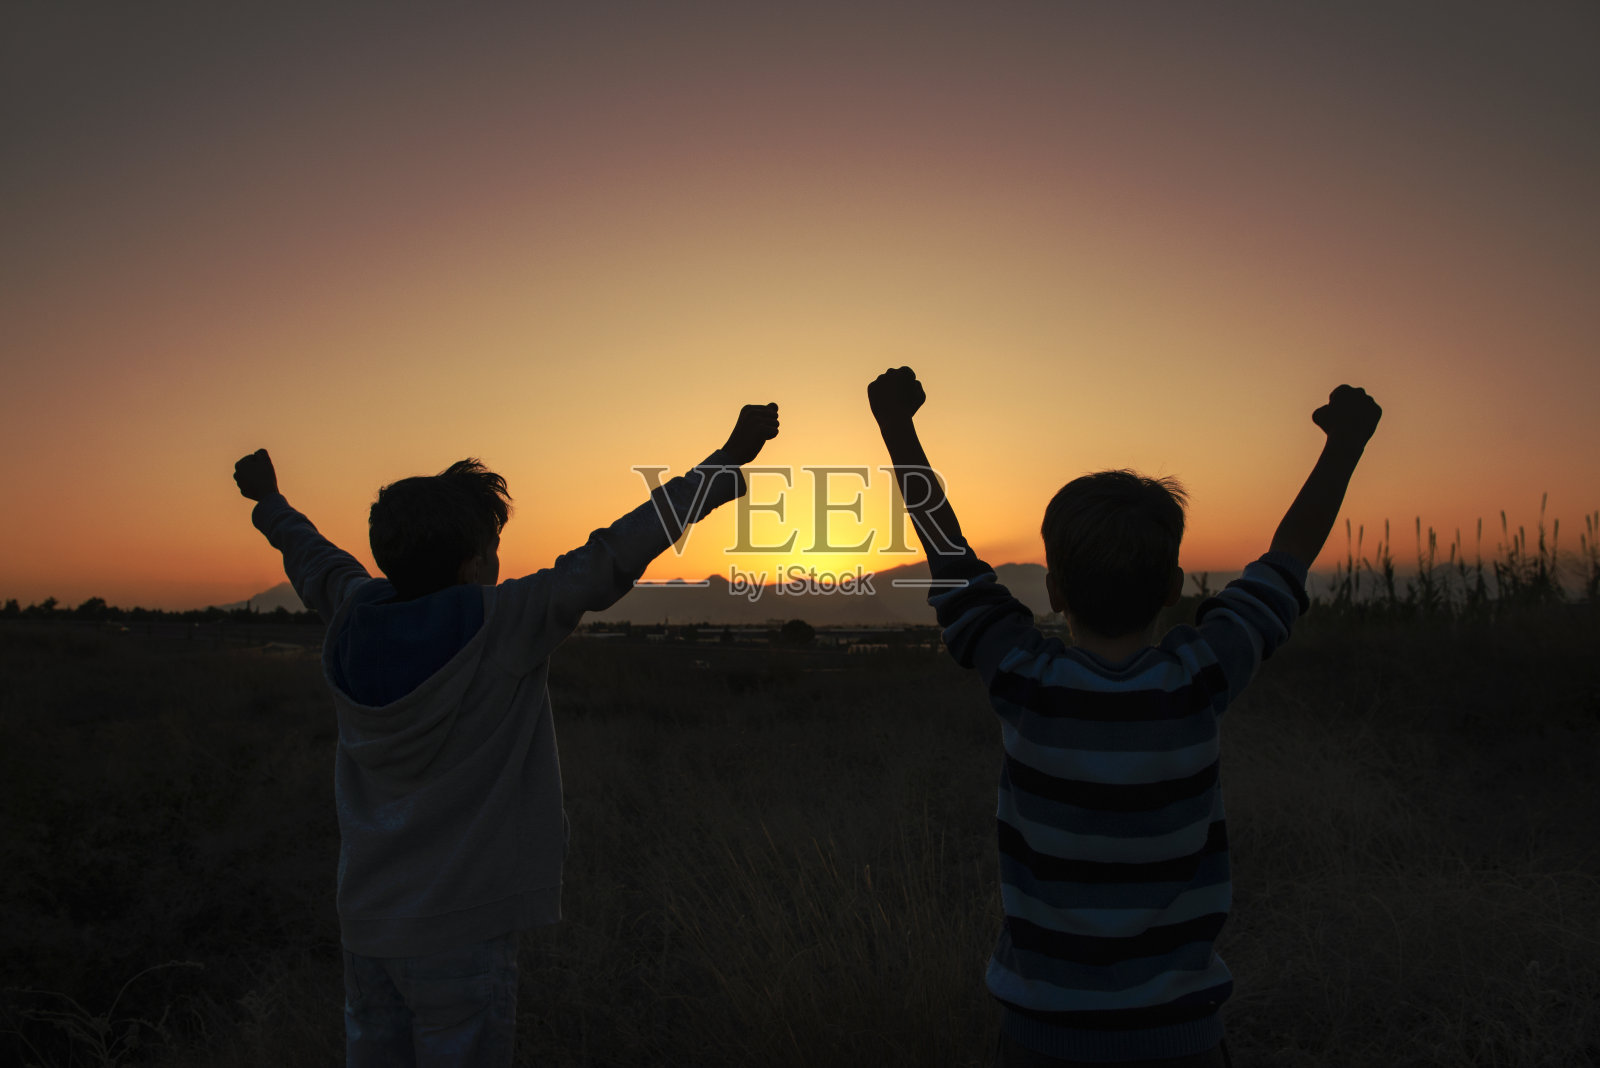 这是两个快乐的朋友在乡村的夕阳下欢呼的照片照片摄影图片